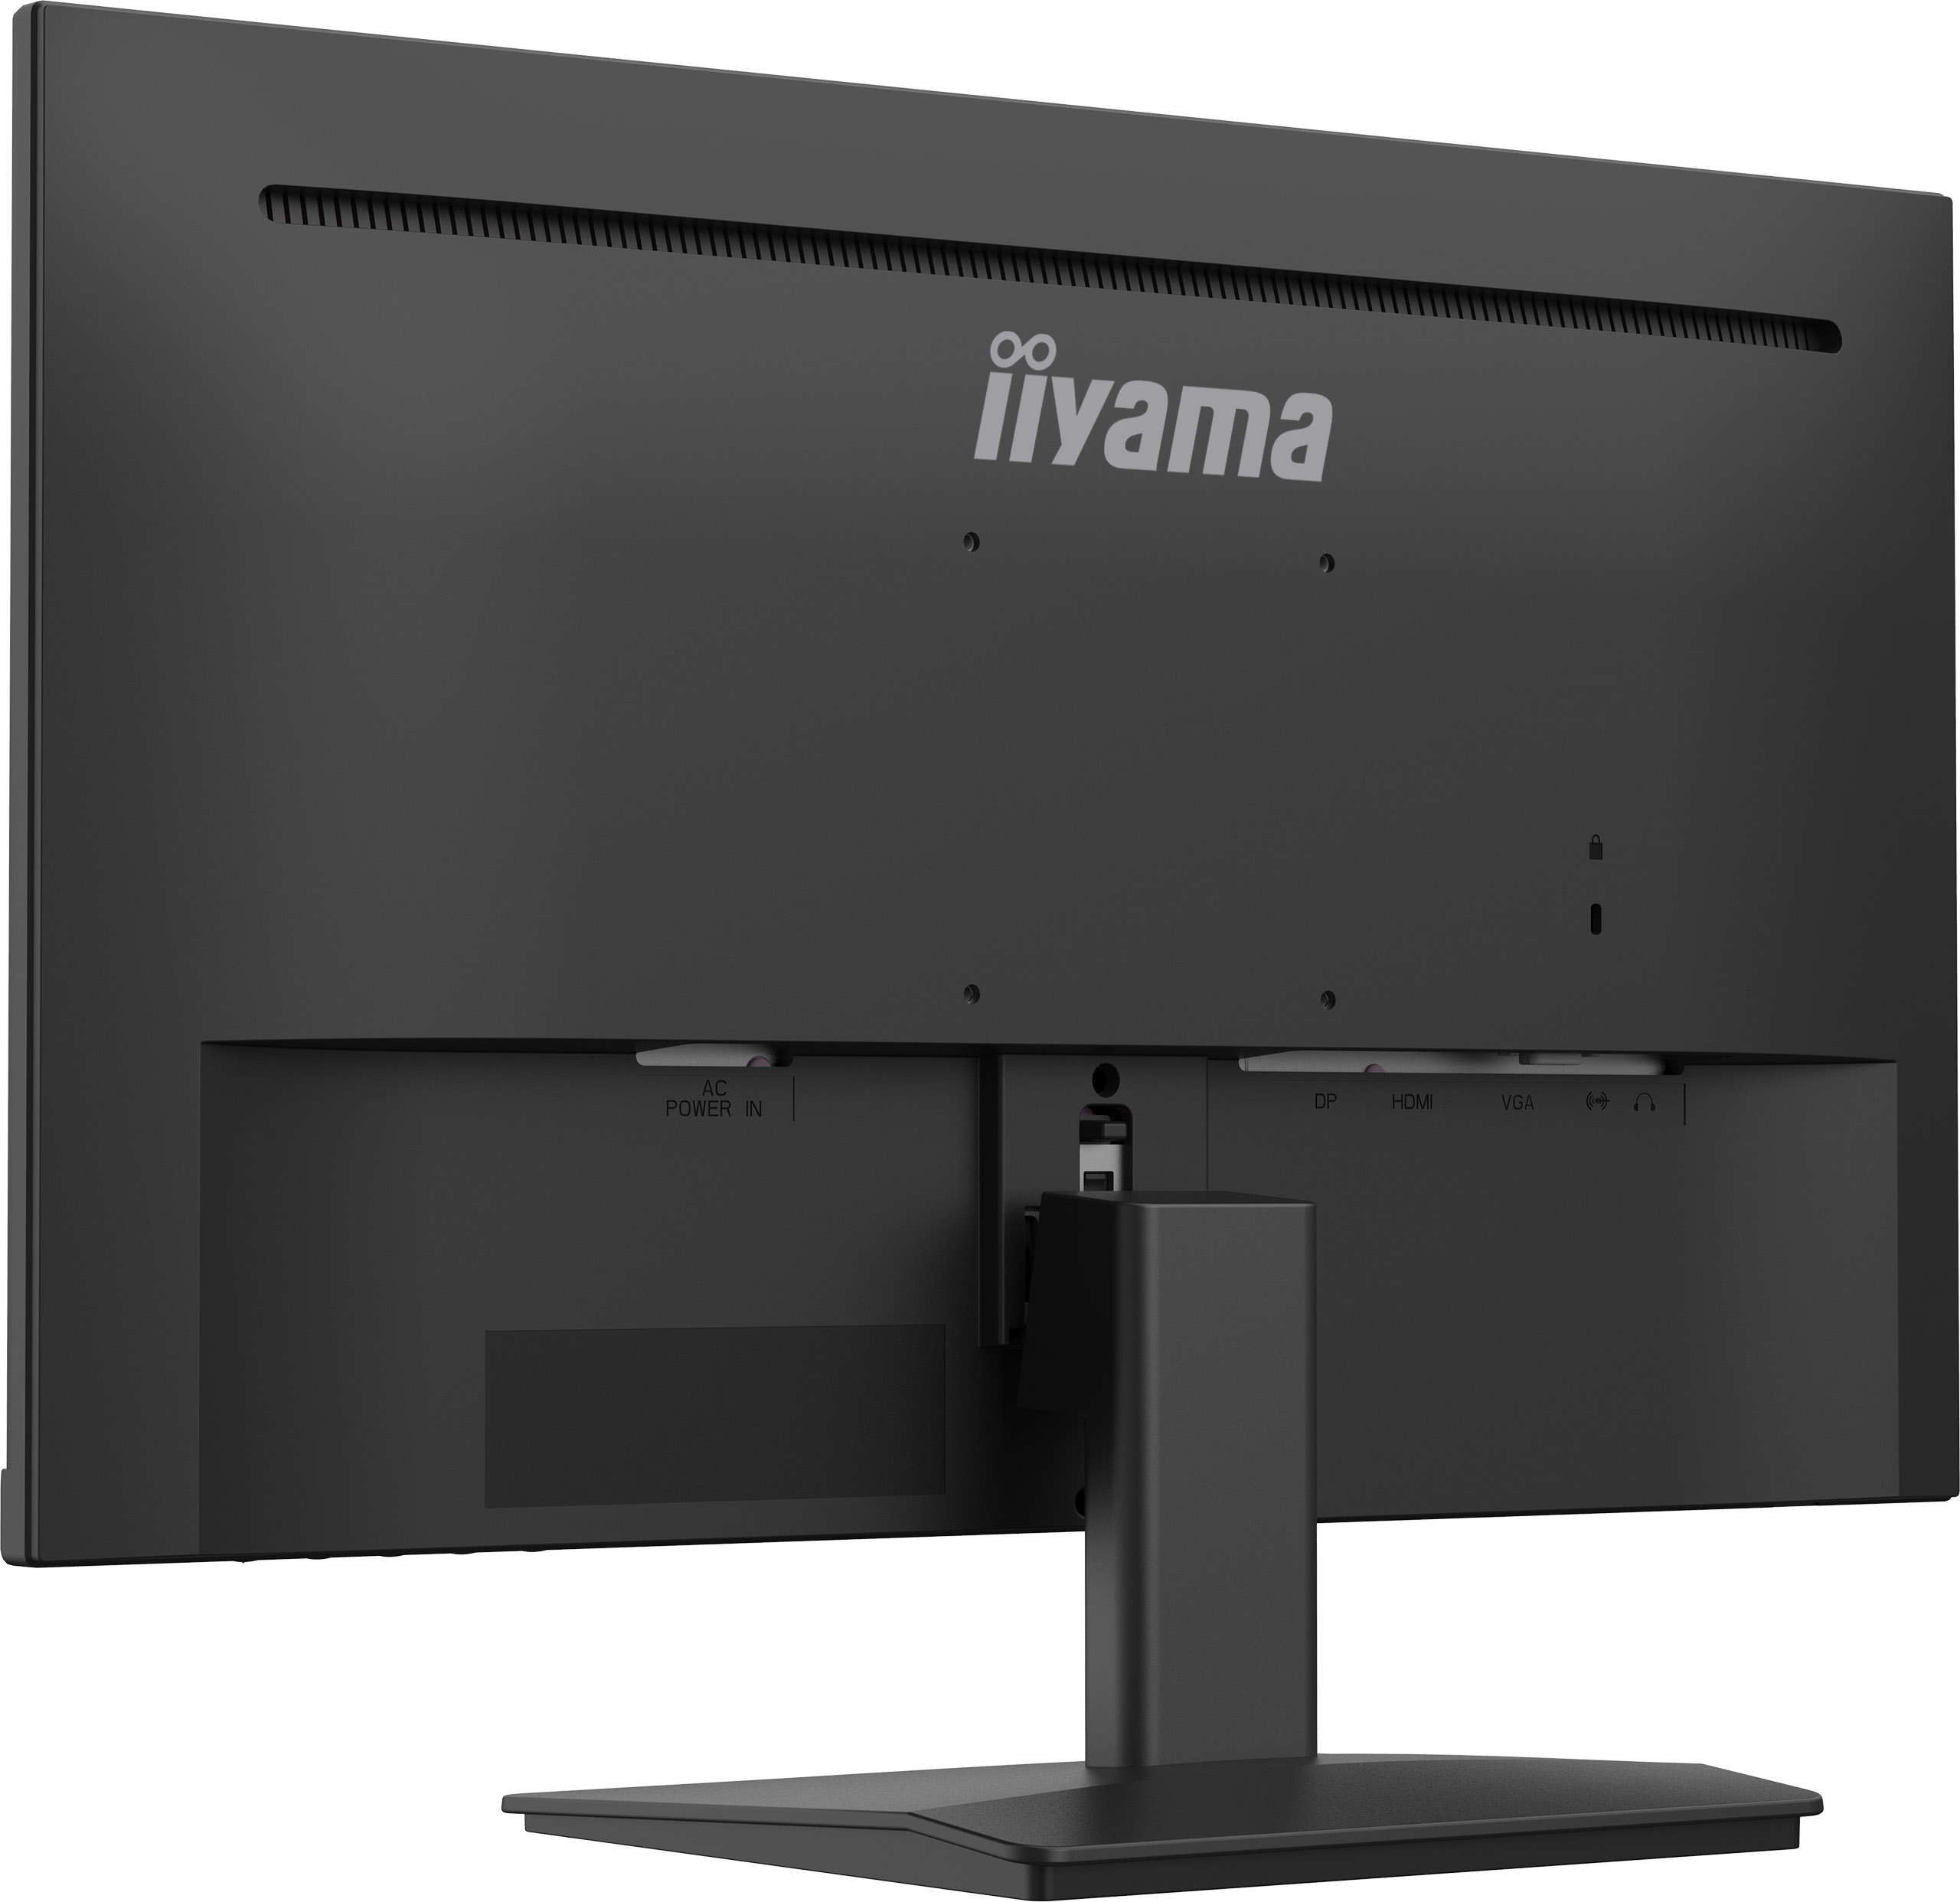 Iiyama ProLite XU2493HS-B4 | 24" (60,5cm) | Monitor mit rahmenlosen Design